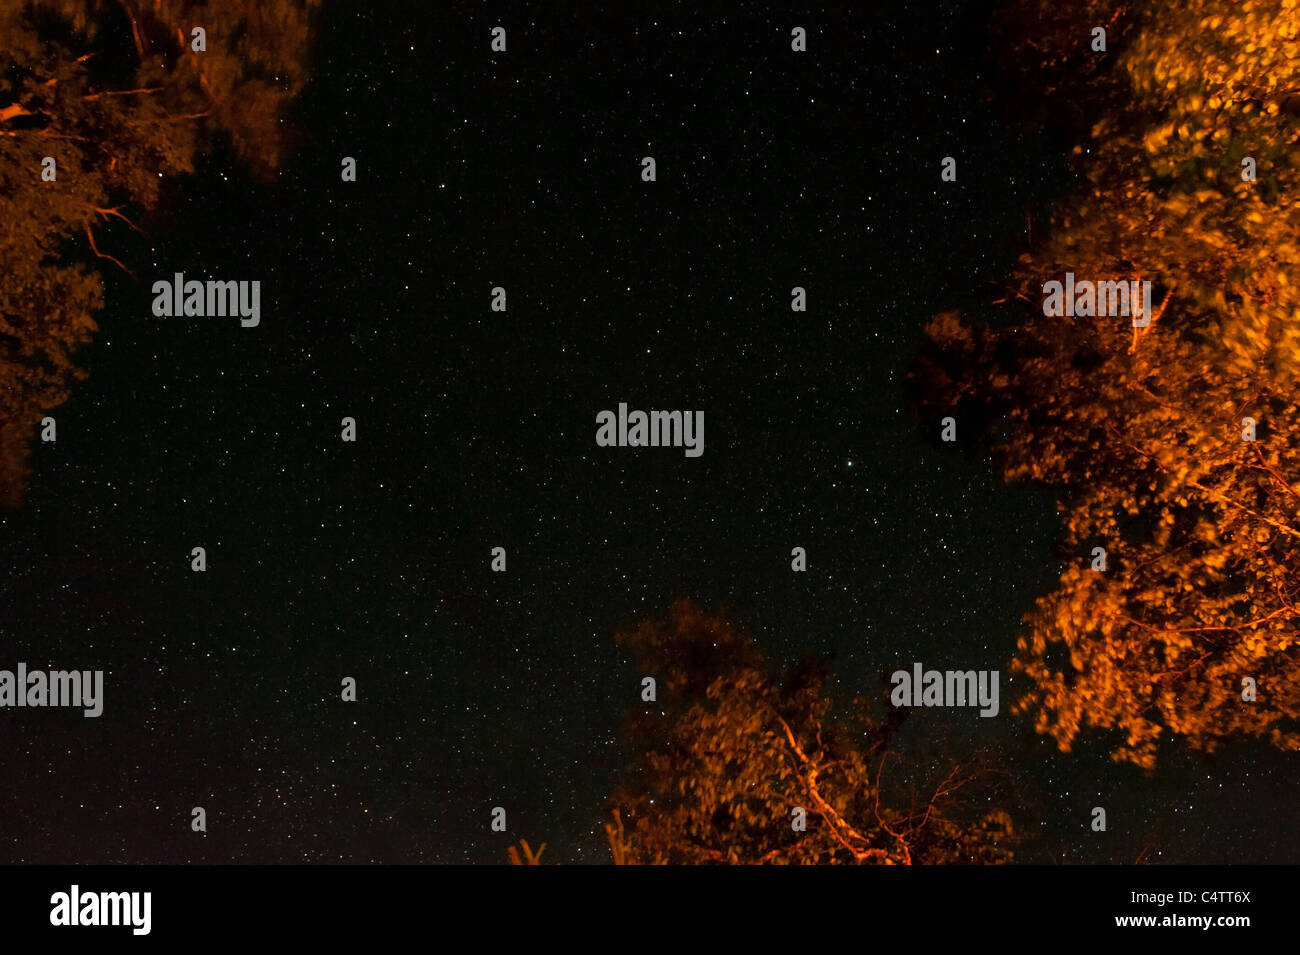 ILLUMINATED TREES AND STARS IN SKY Stock Photo